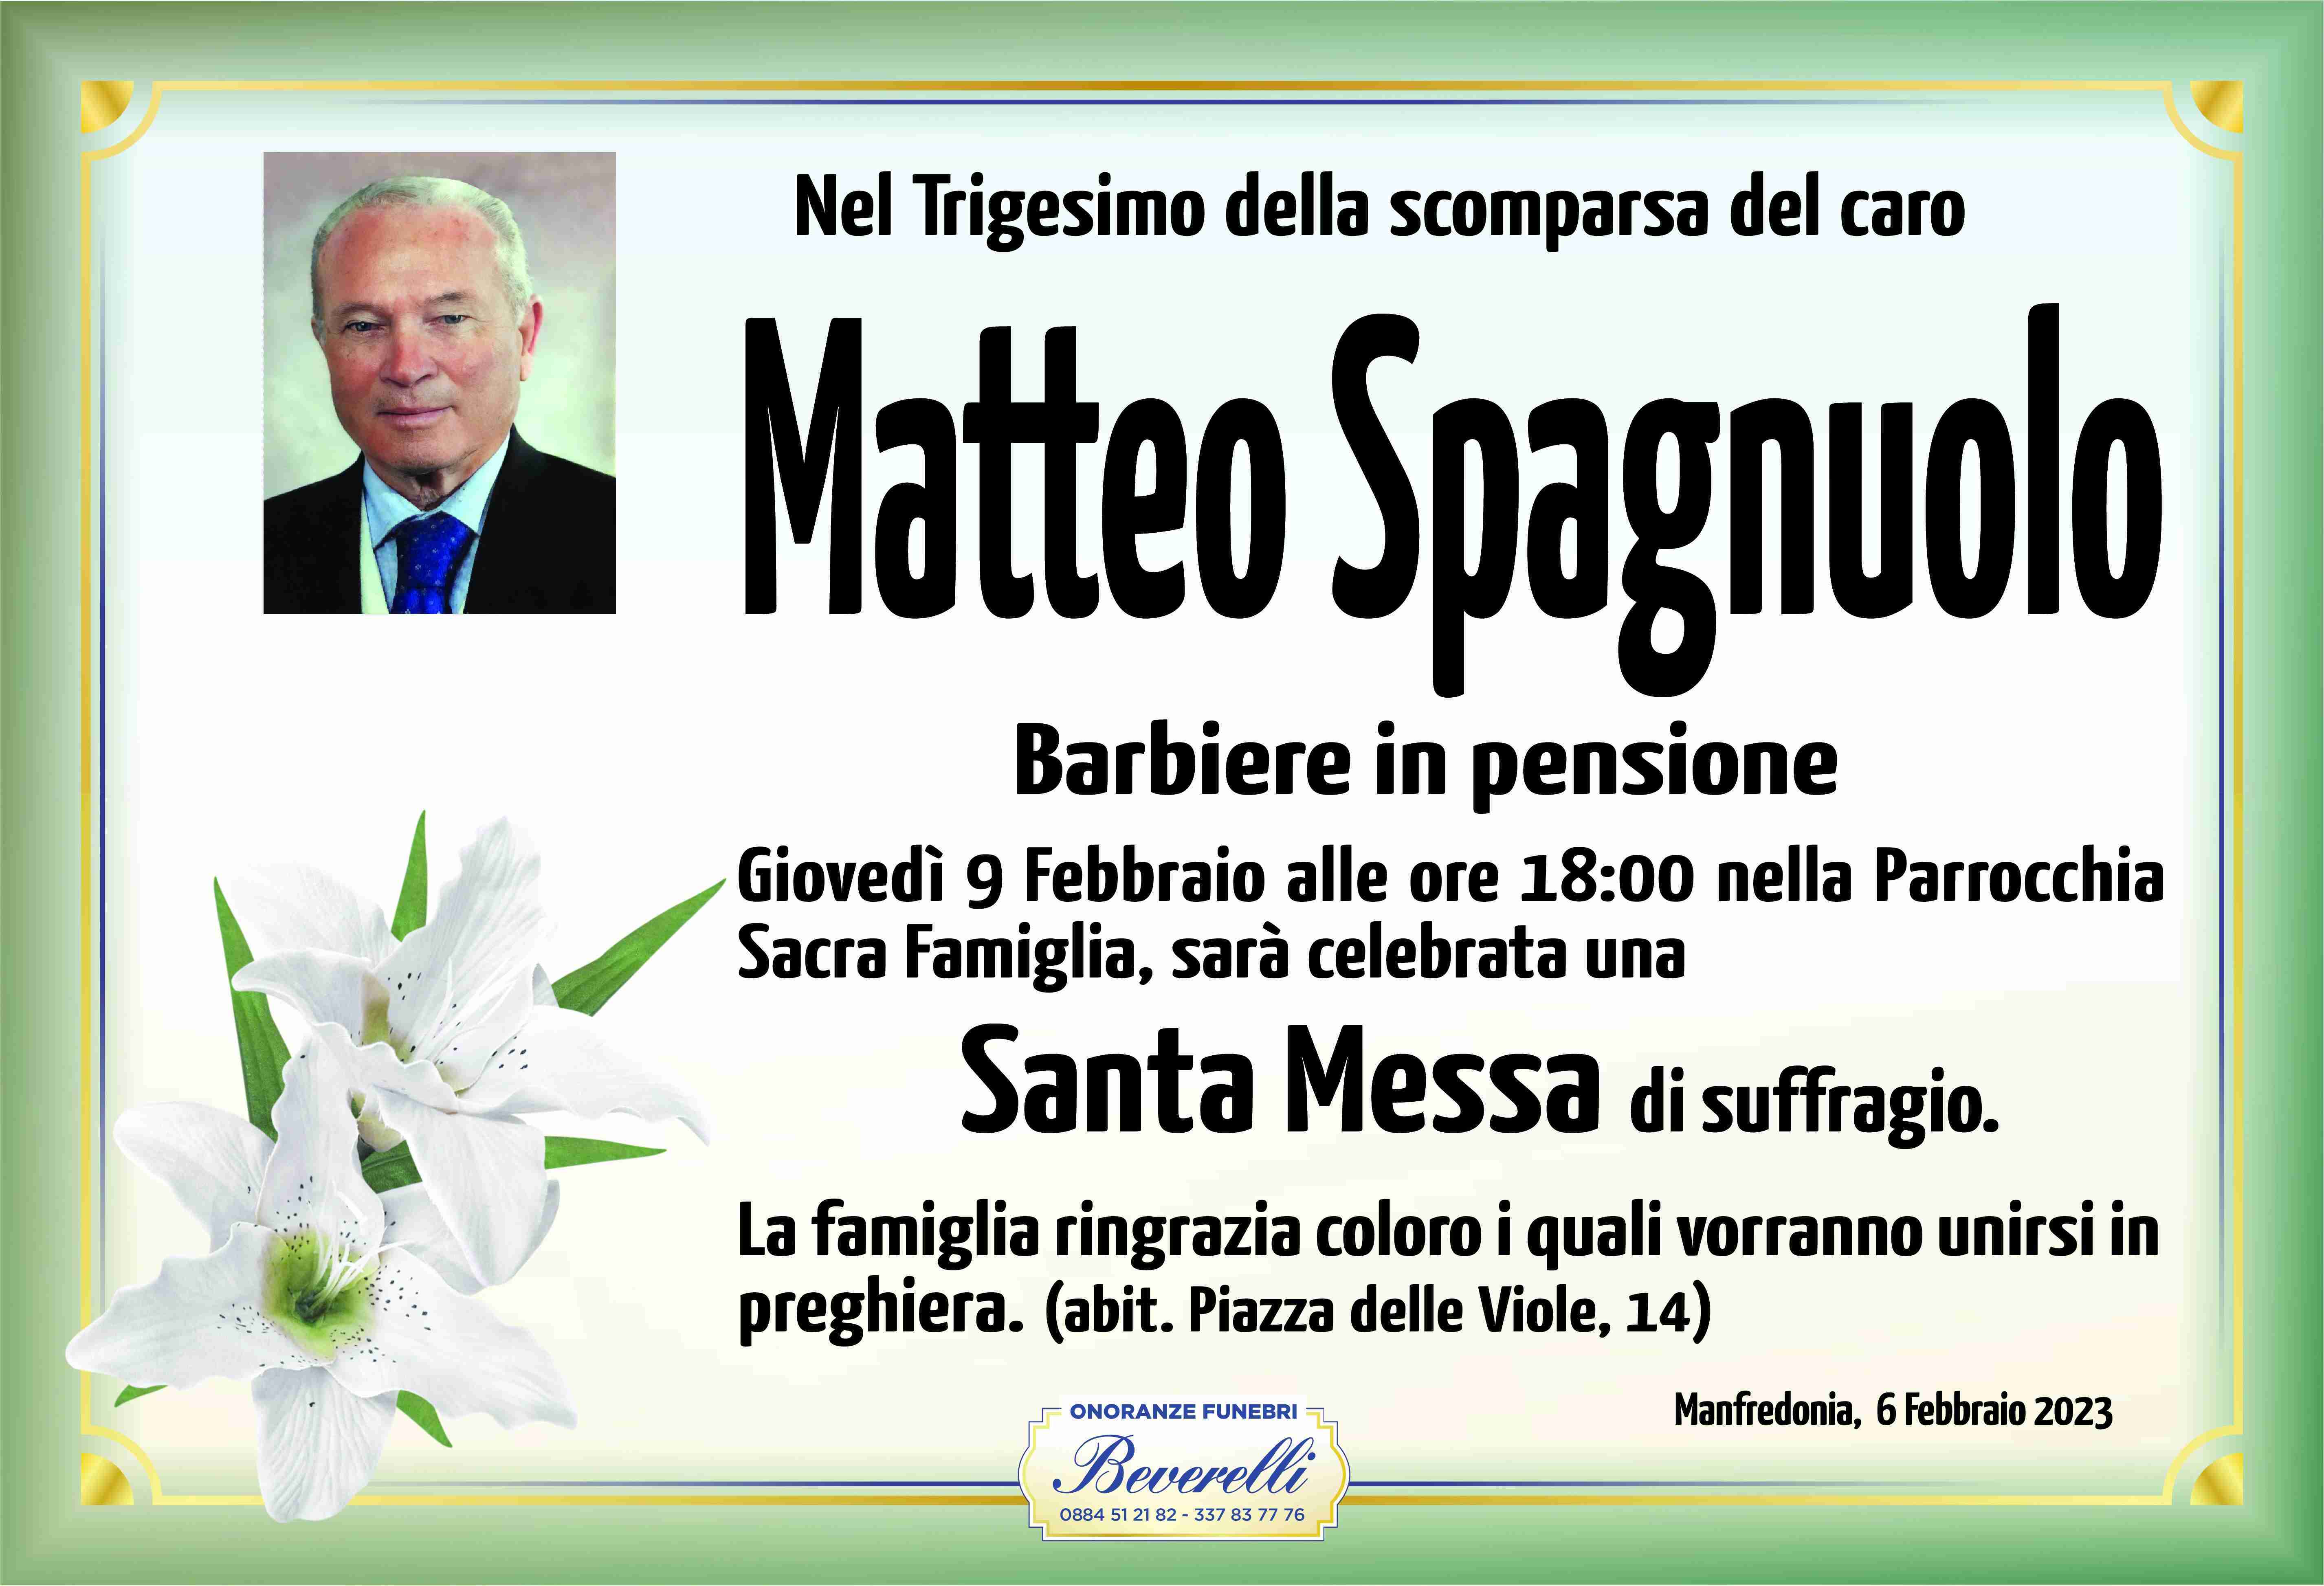 Matteo Spagnuolo